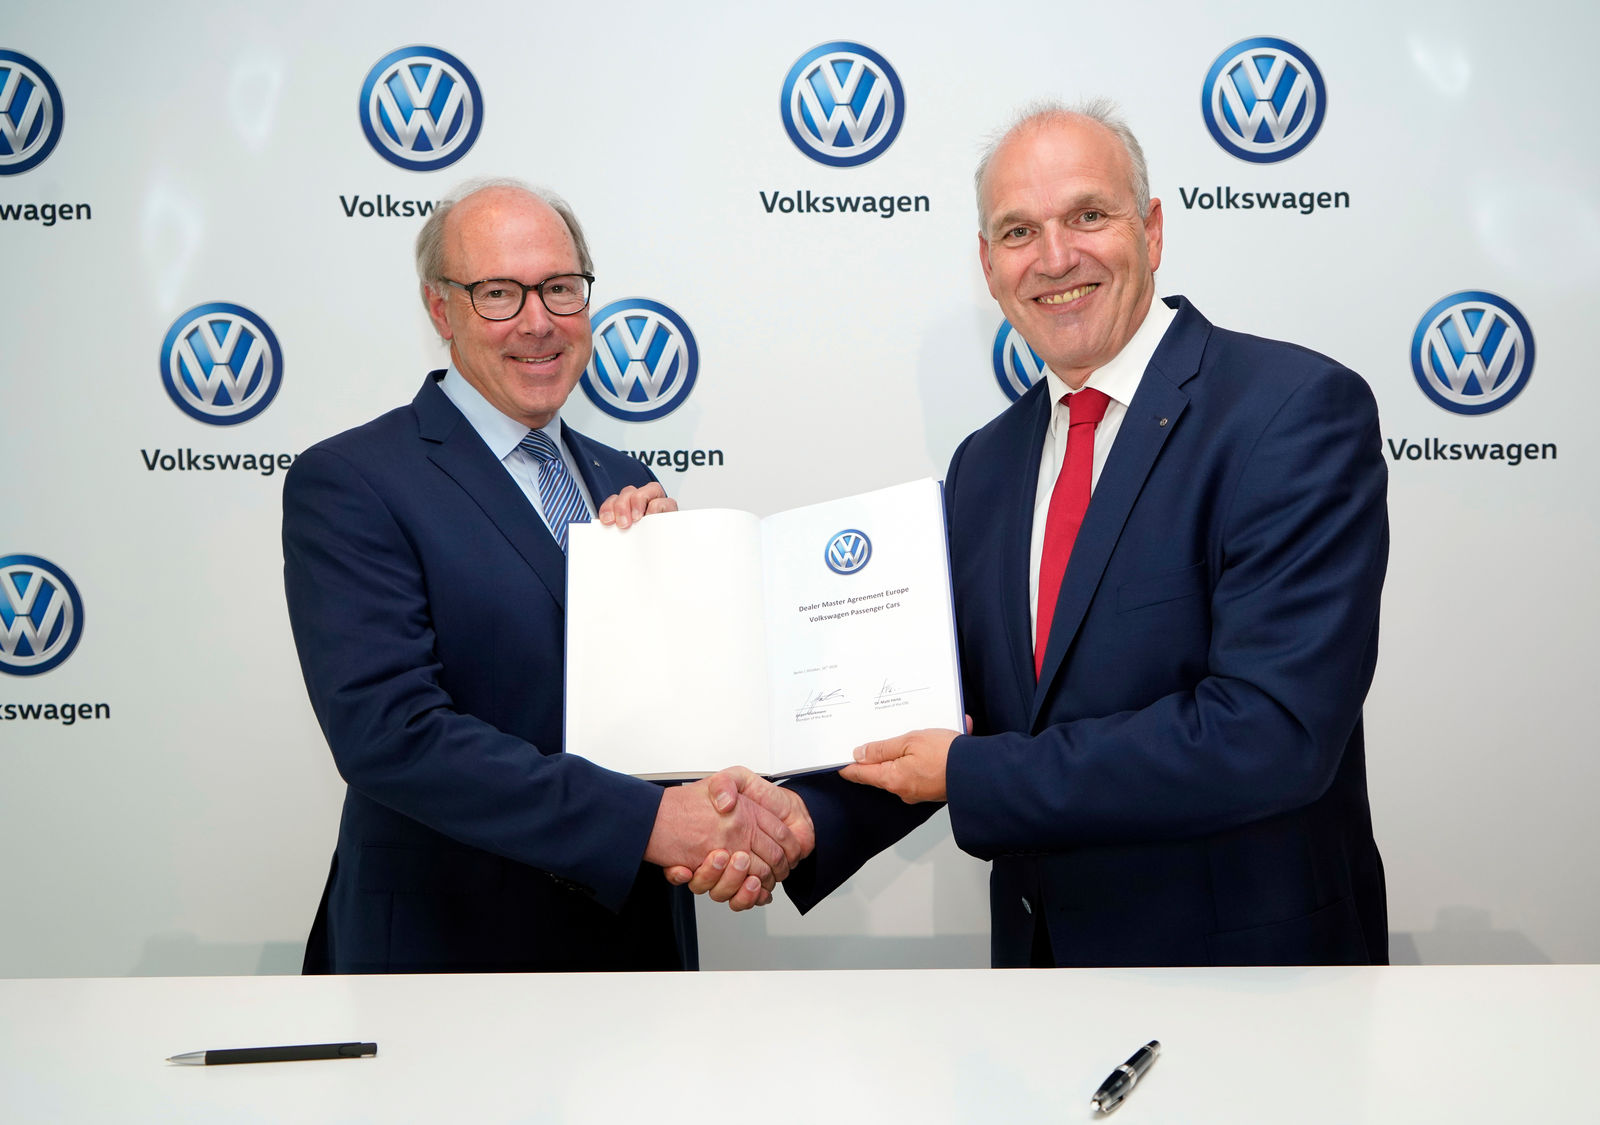 Volkswagen digitalisiert Vertrieb – 2020 beginnt neues Zeitalter des Autokaufs